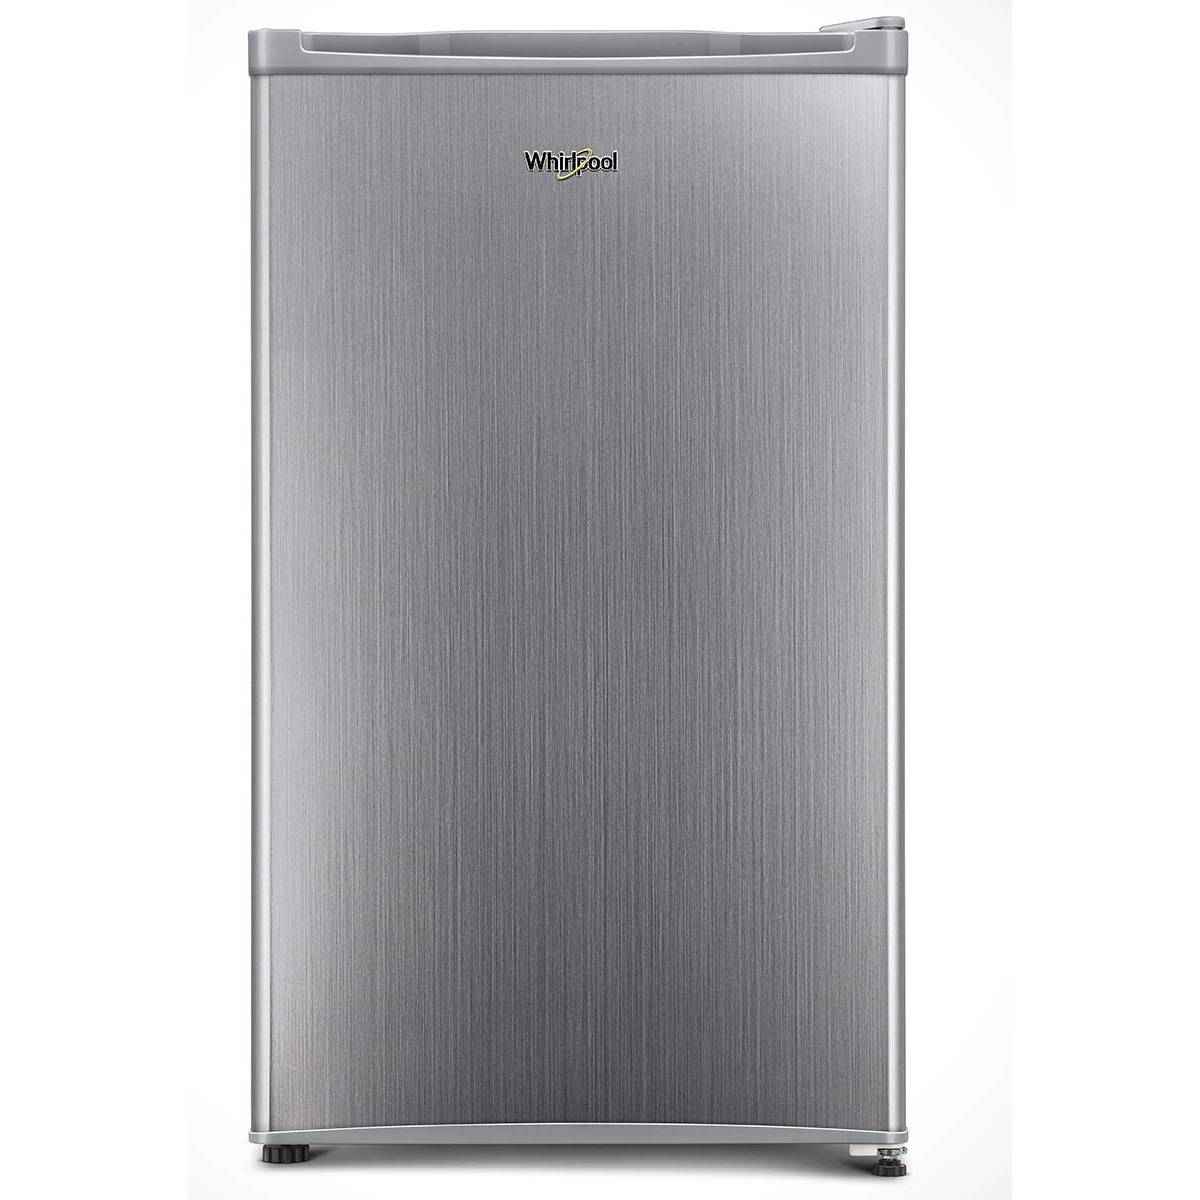 Whirlpool 92 L 2 Star Mini Refrigerator (2019)